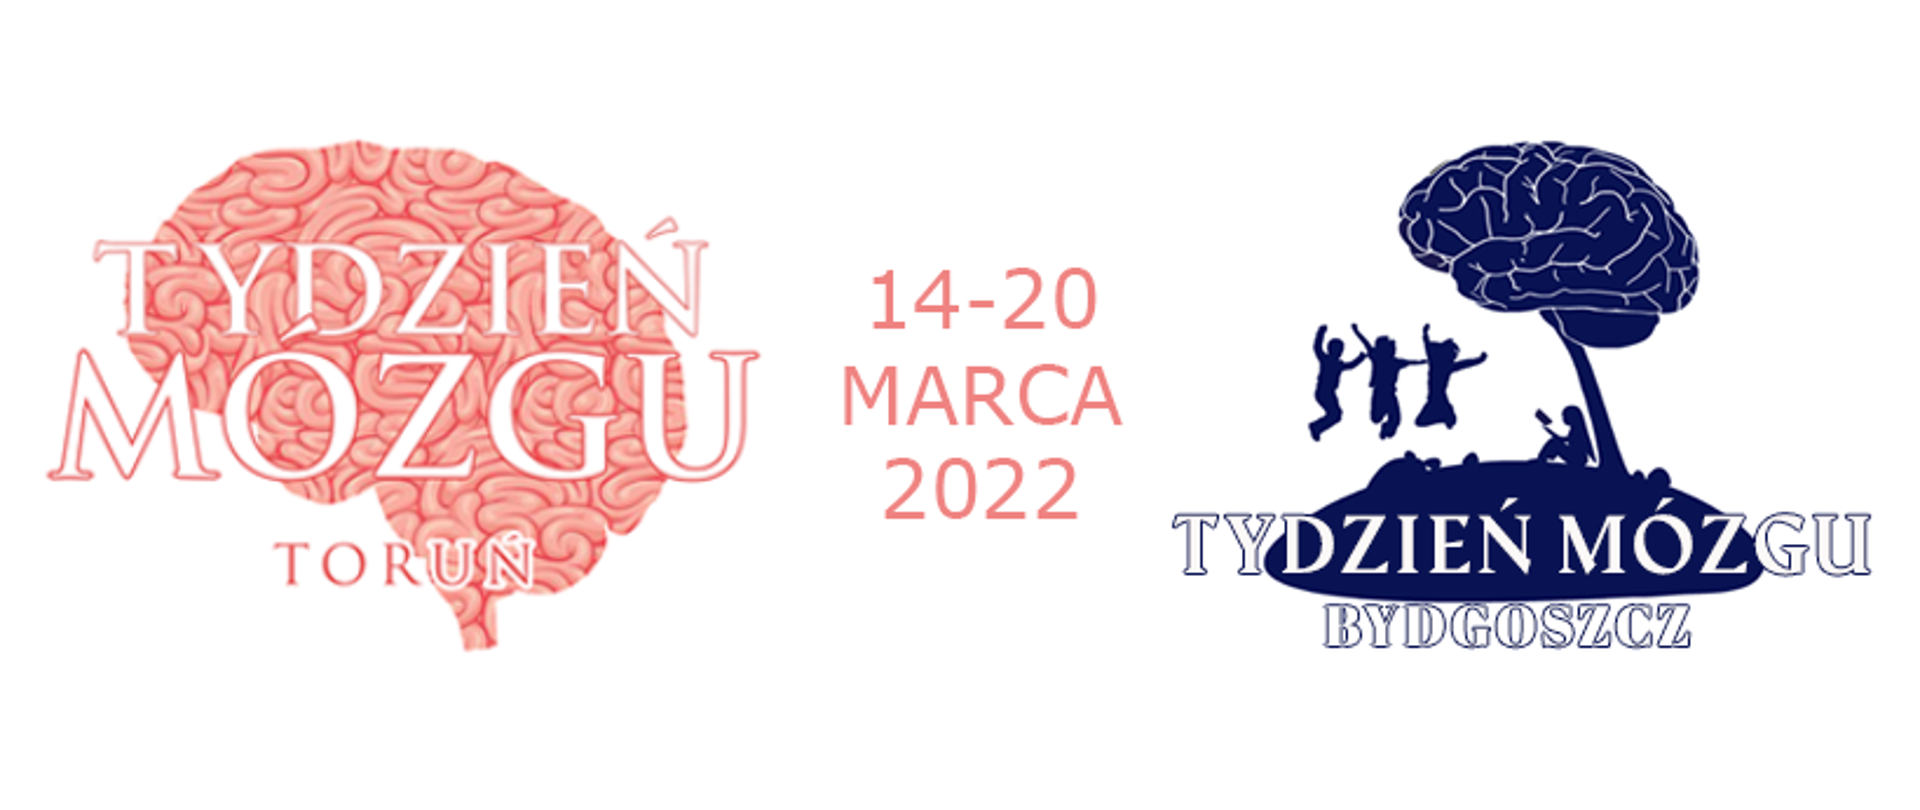 Tydzień Mózgu 14-20 marca 2022 w Bydgoszczy i Toruniu